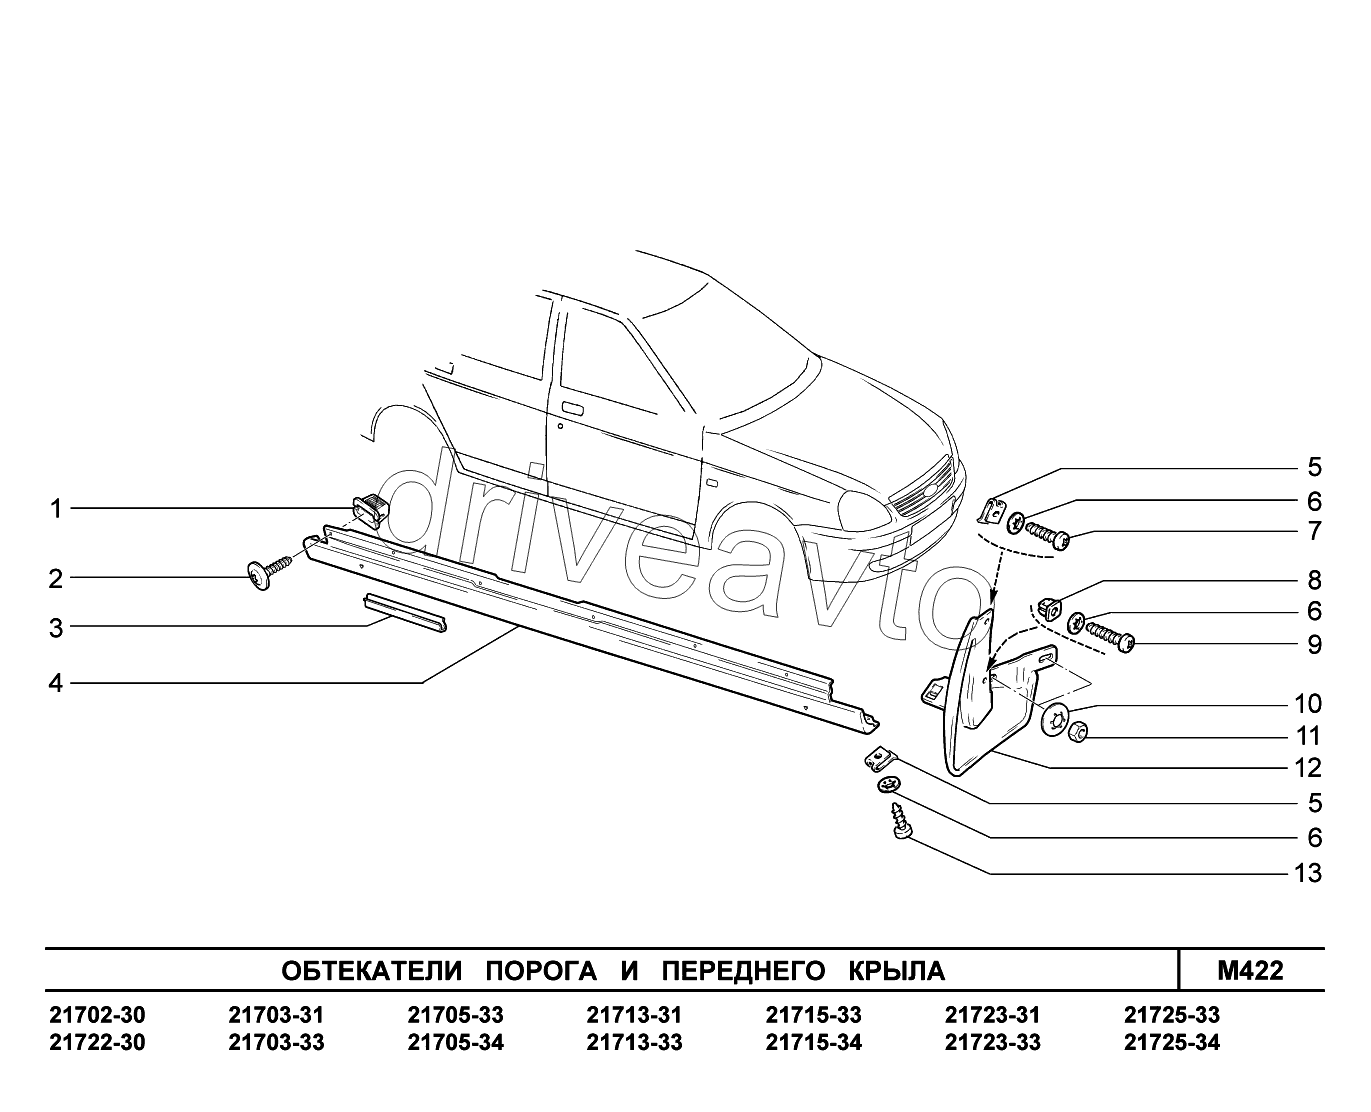 M422. Обтекатели порога и переднего крыла